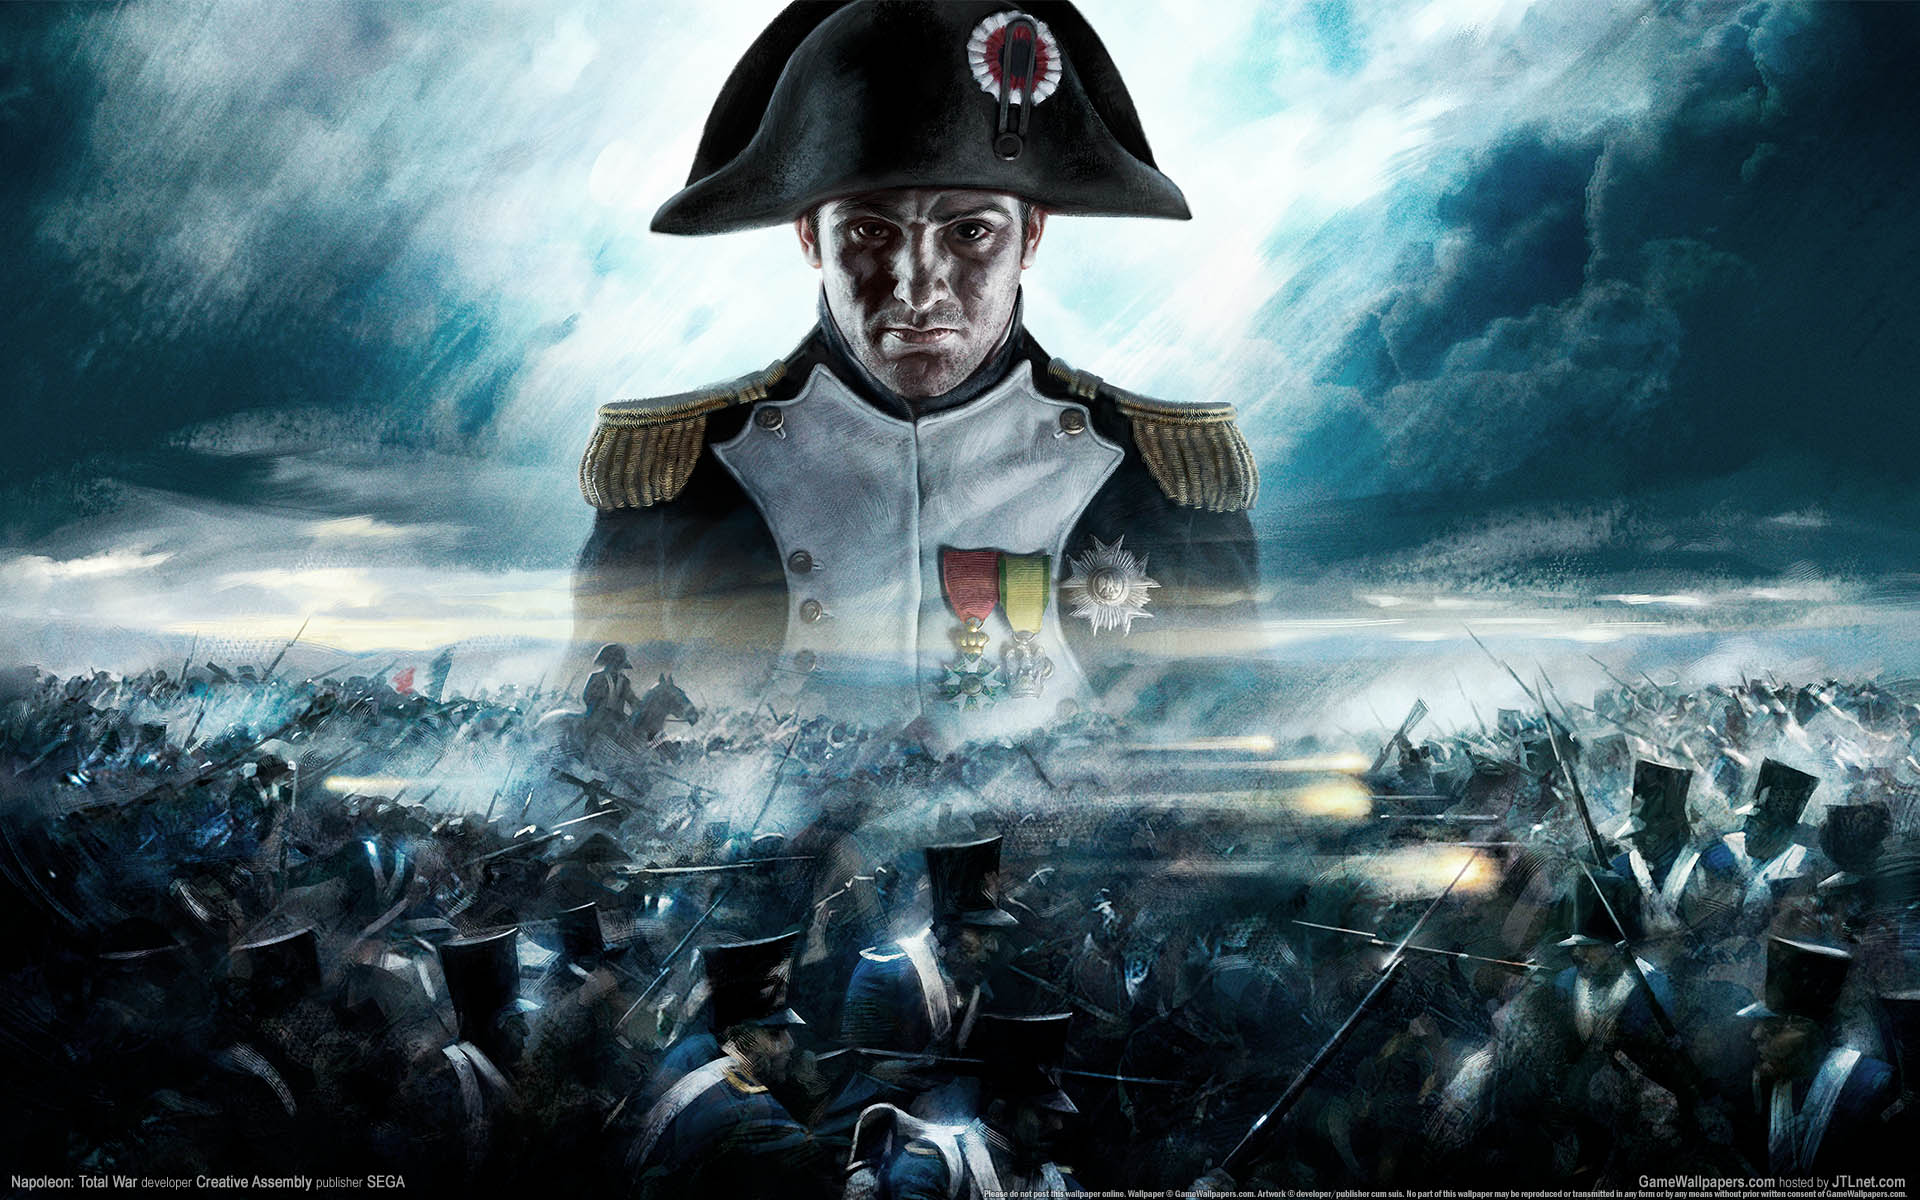 Napoleon: Total War fond d'cran 01 1920x1200